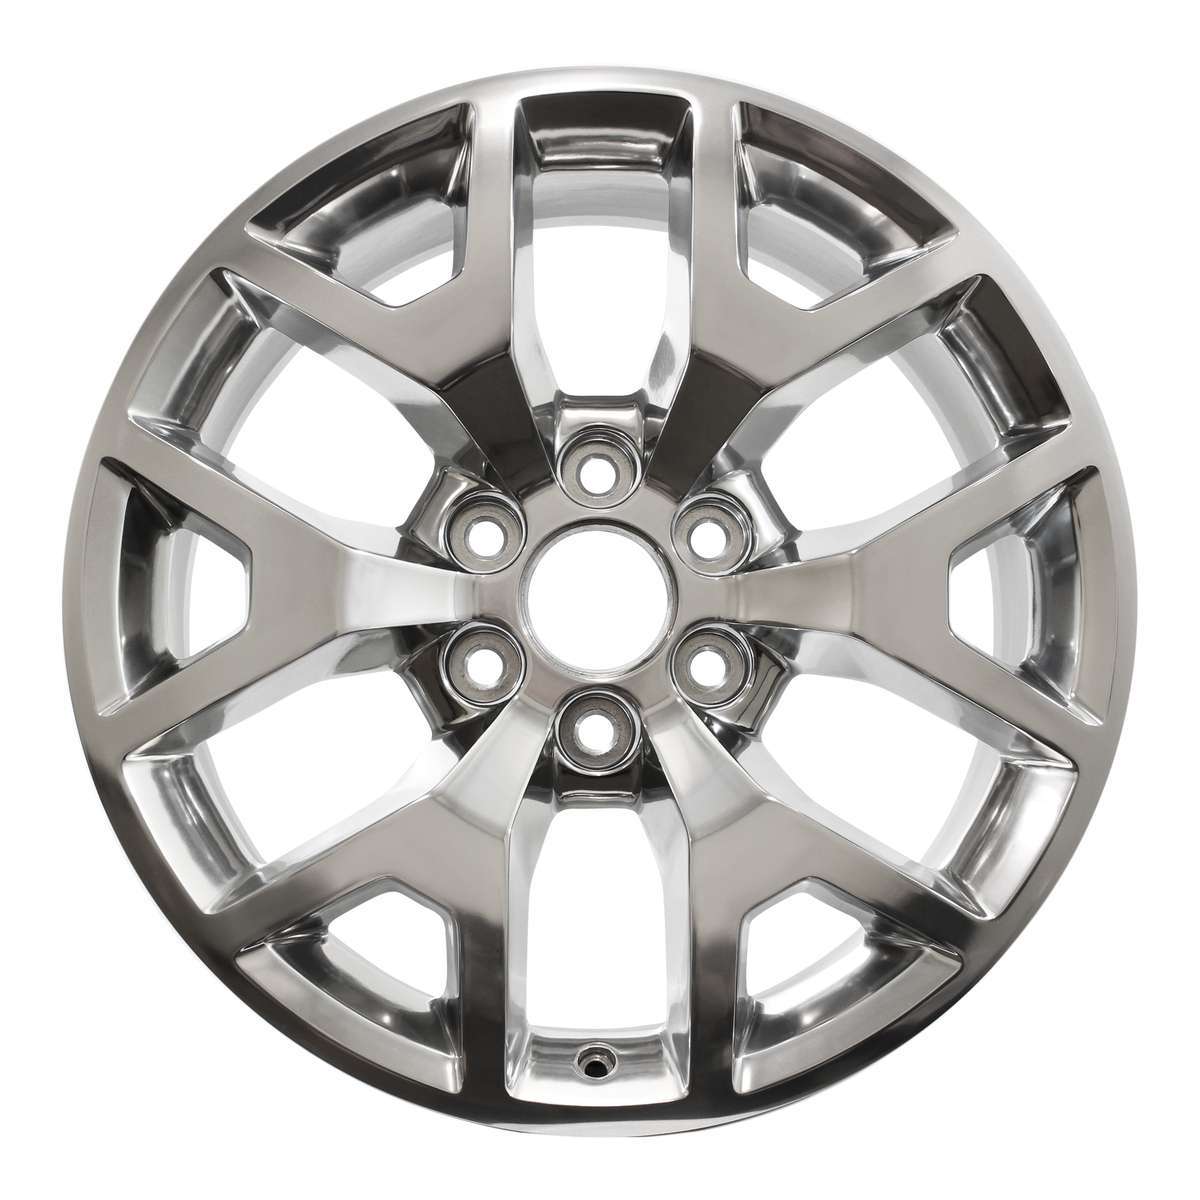 2021 GMC Yukon XL 20" OEM Wheel Rim W5698P